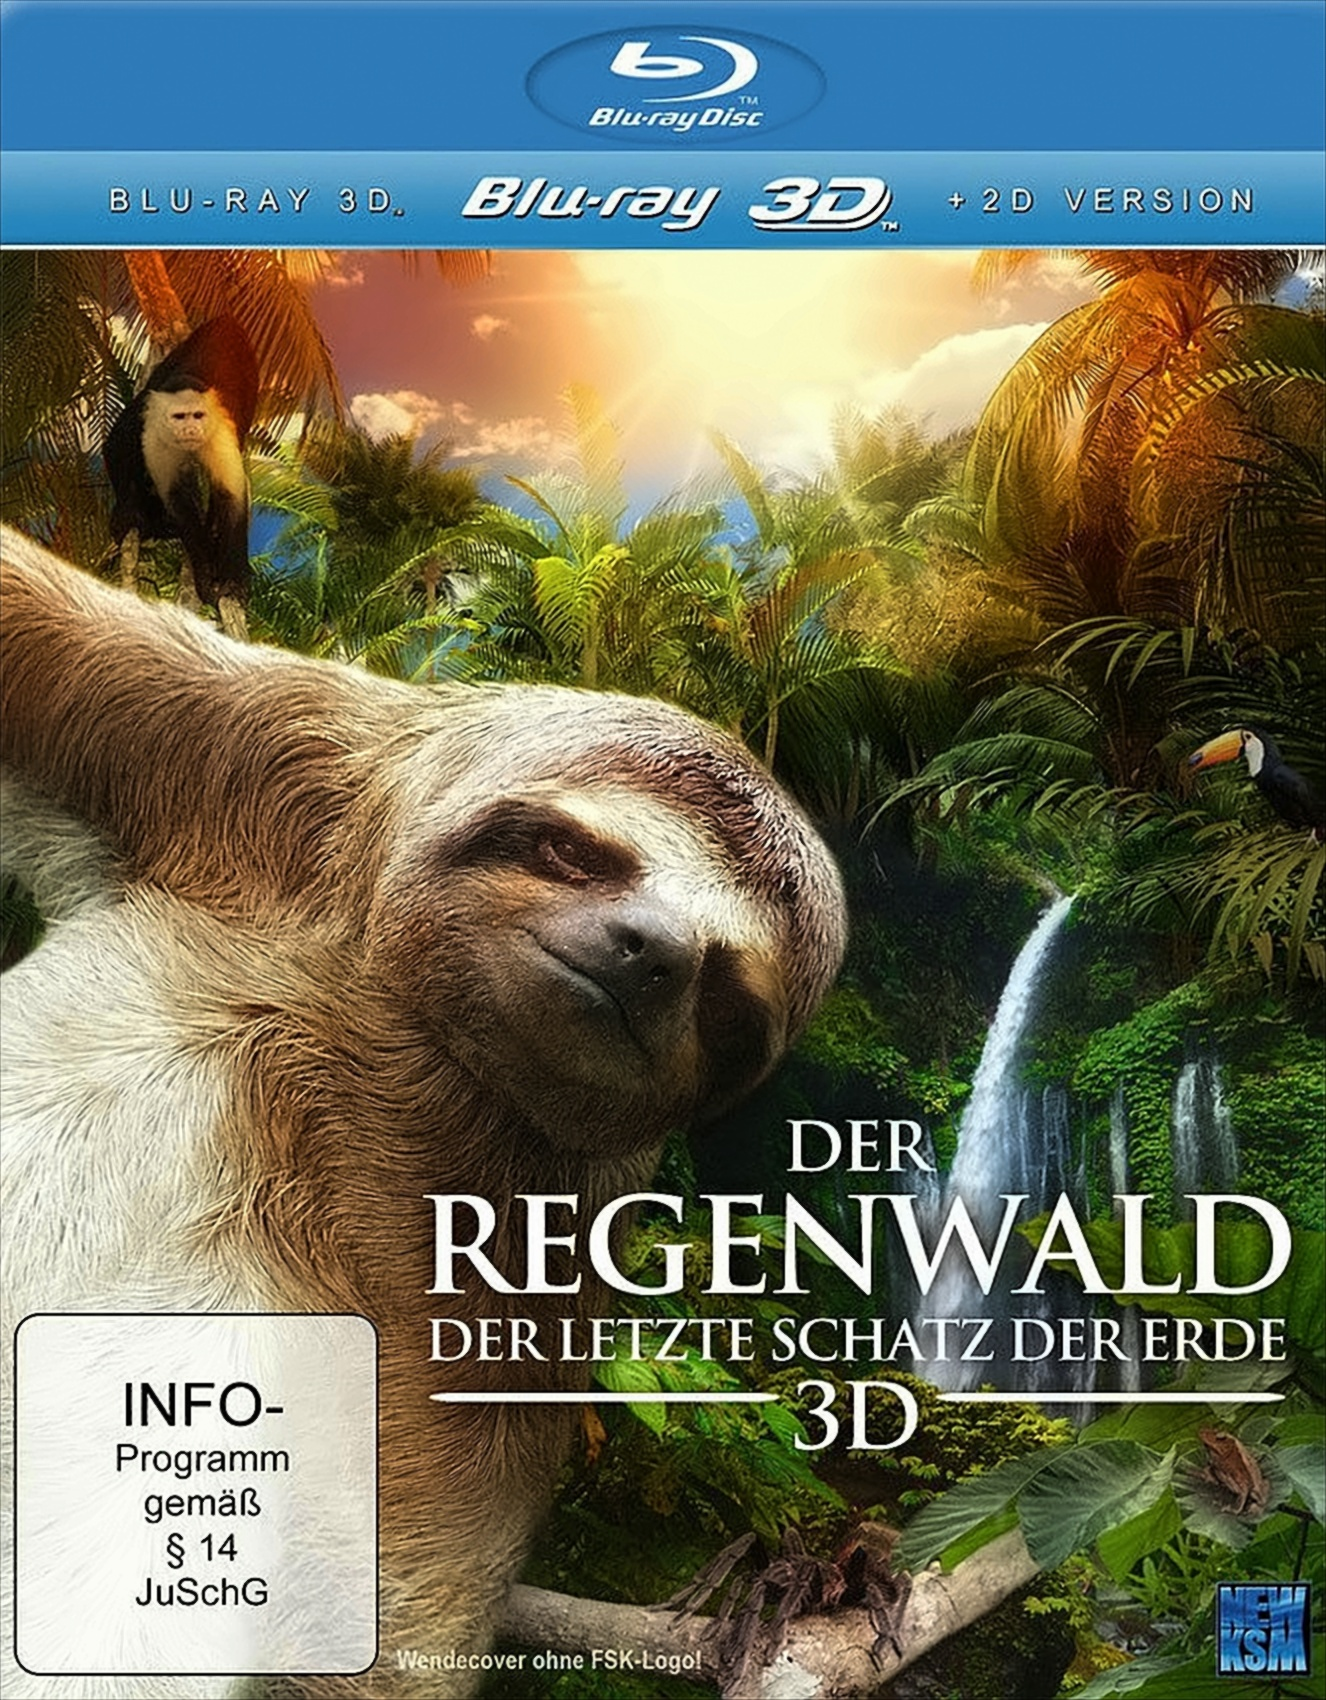 2D+3D) Regenwald (Blu-ray letzte der Schatz - Erde Der Der Blu-ray